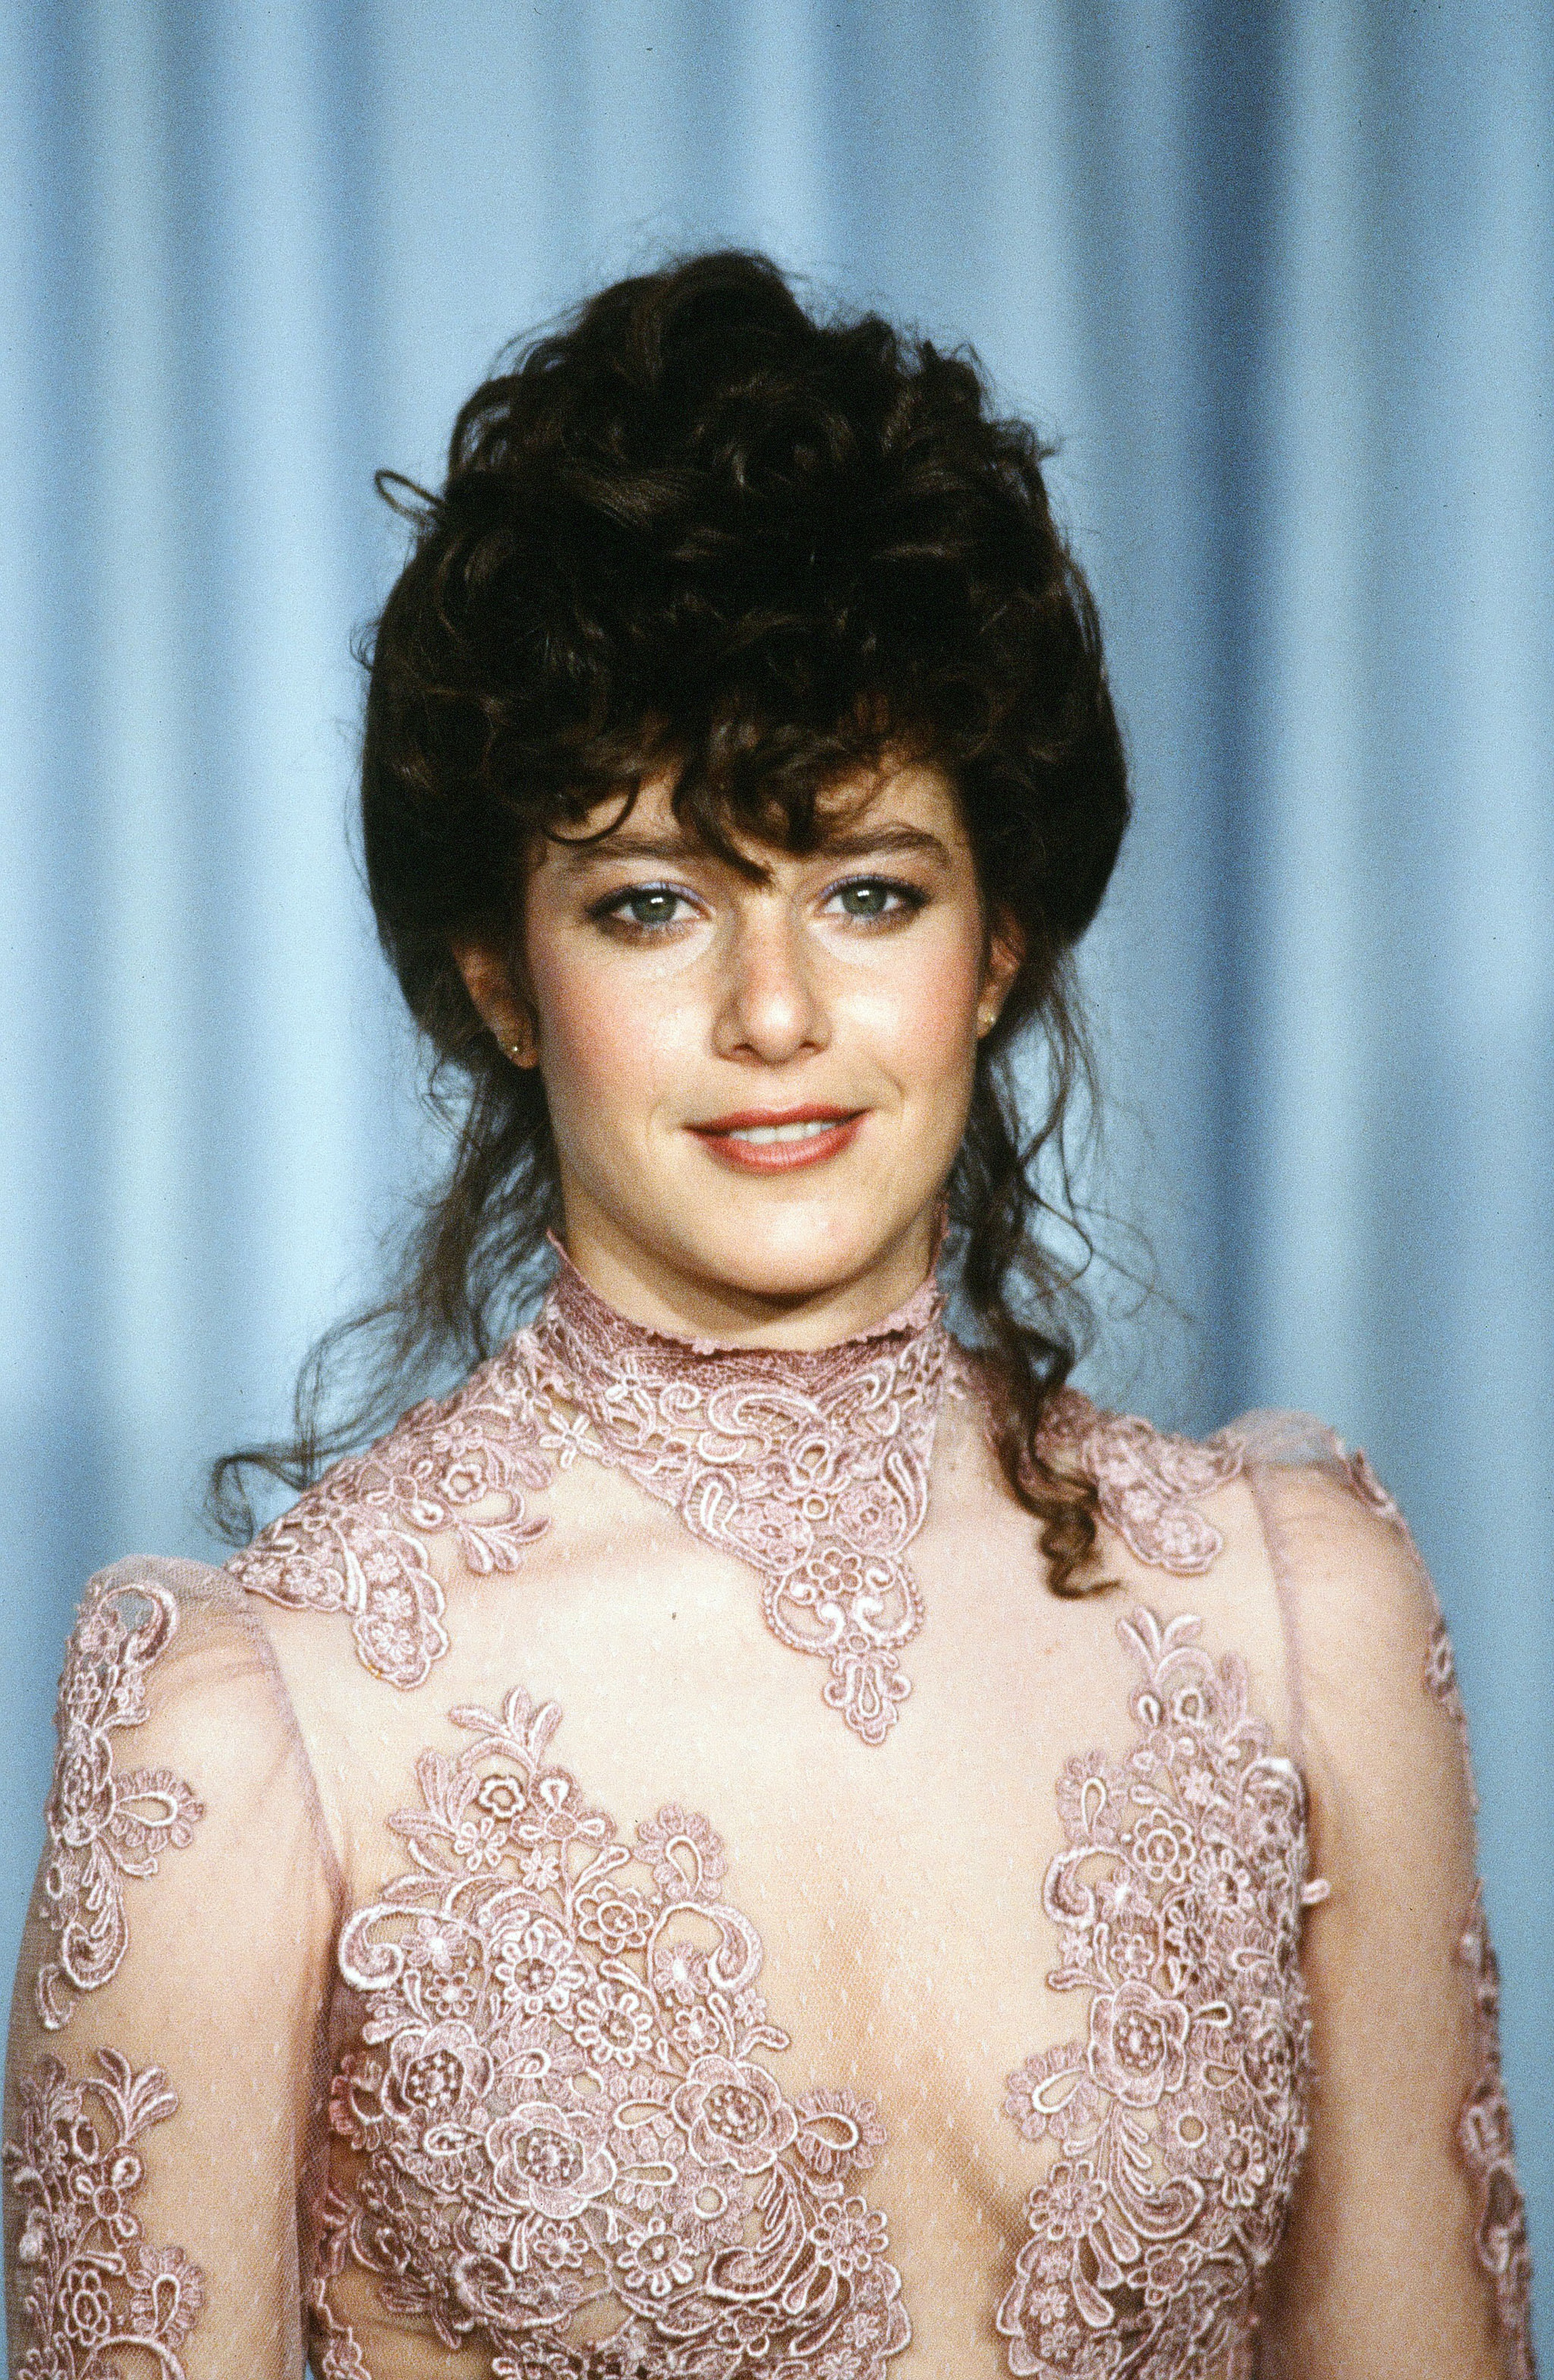 Debra Winger durante la 54 edición de los Premios de la Academia el 29 de marzo de 1982 en Los Ángeles, California. | Fuente: Getty Images